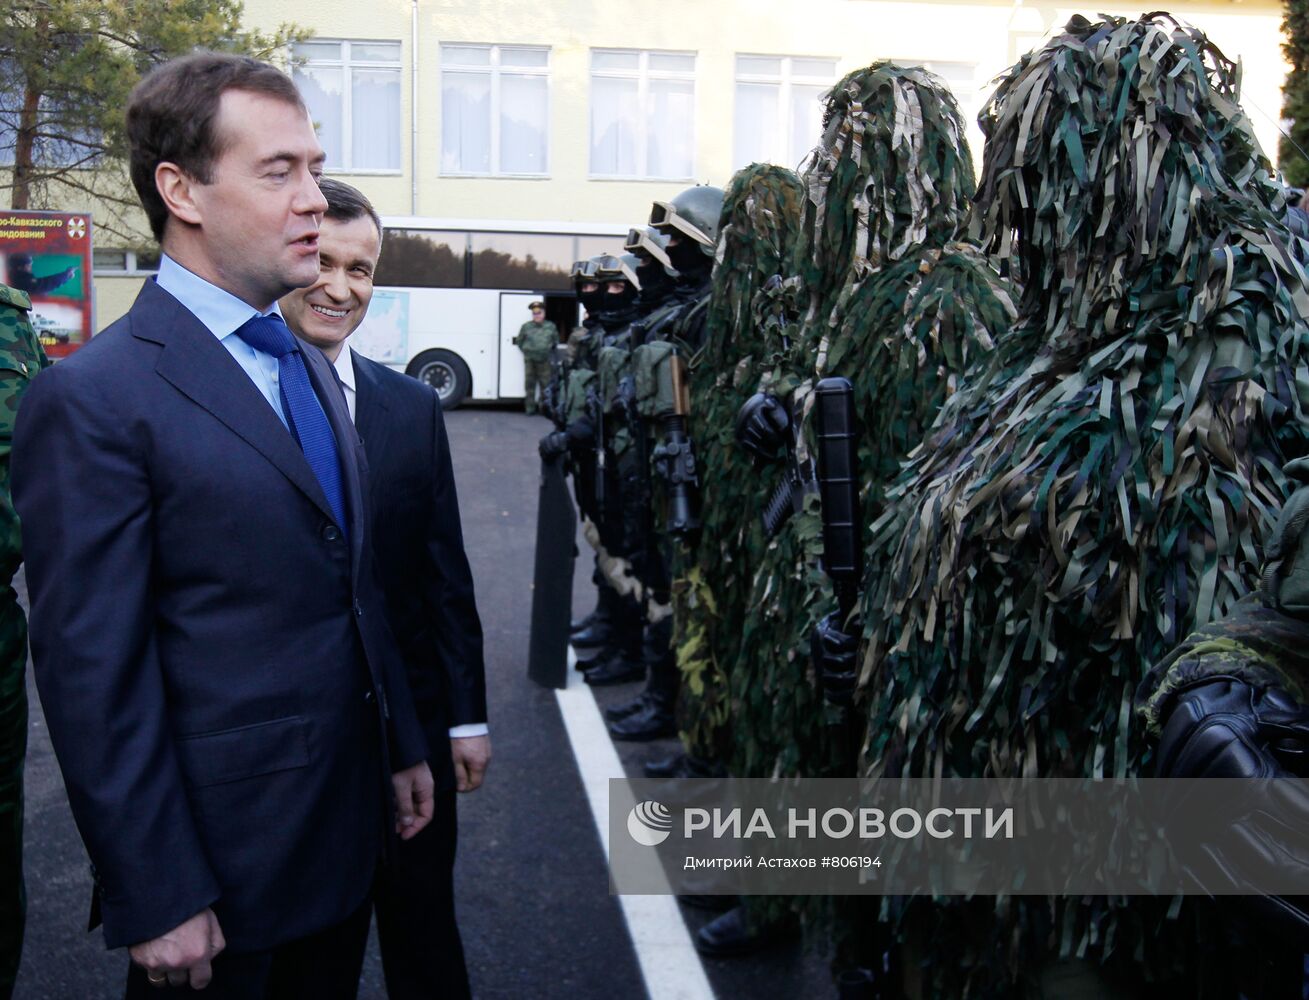 Рабочая поездка Дмитрия Медведев в СКФО